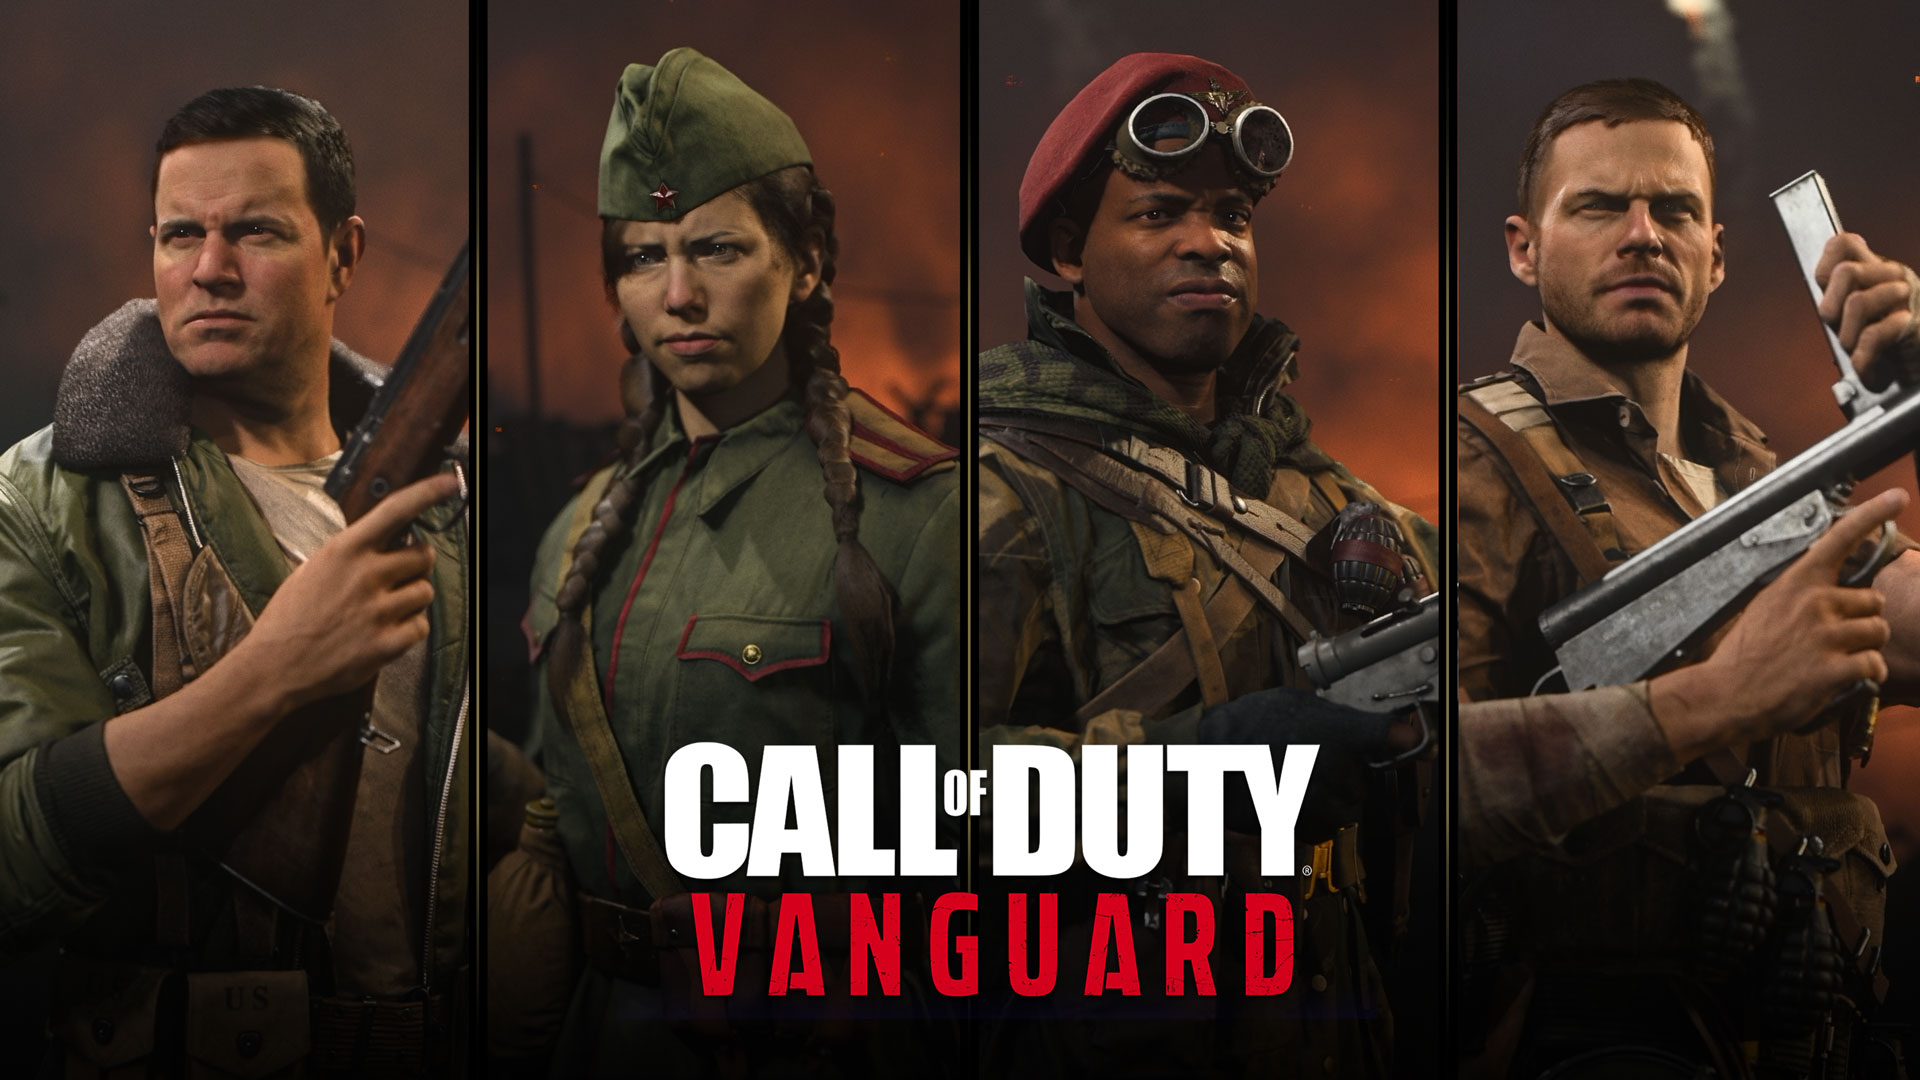 Incontra gli operatori della campagna di Call of Duty: Vanguard